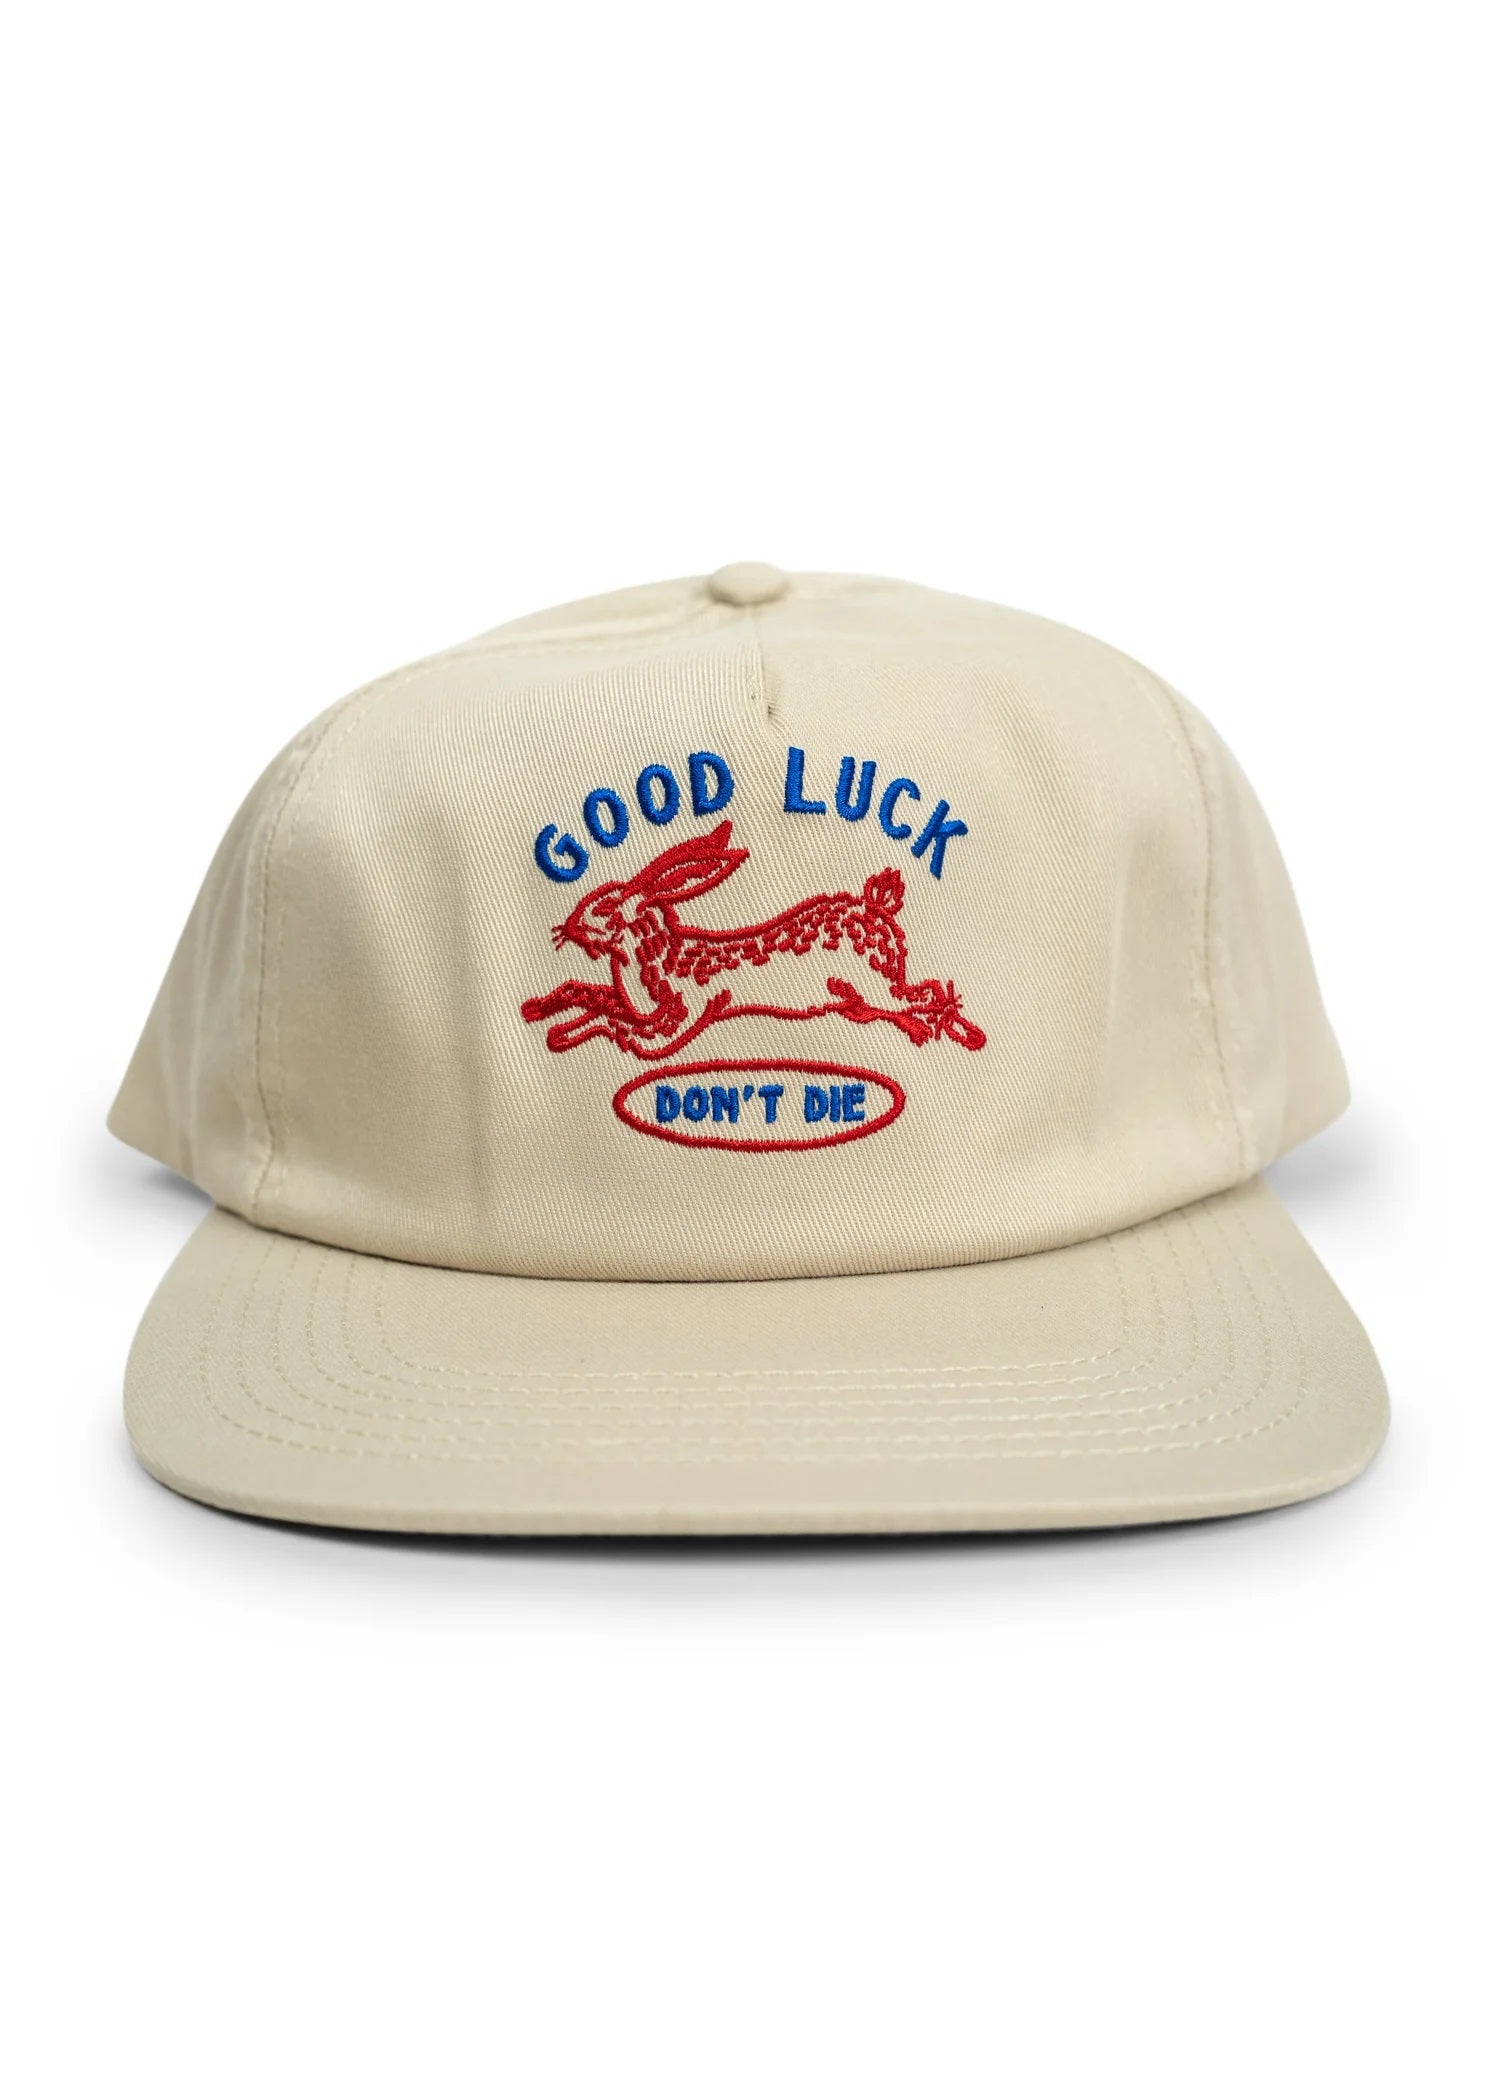 Good Luck Hat